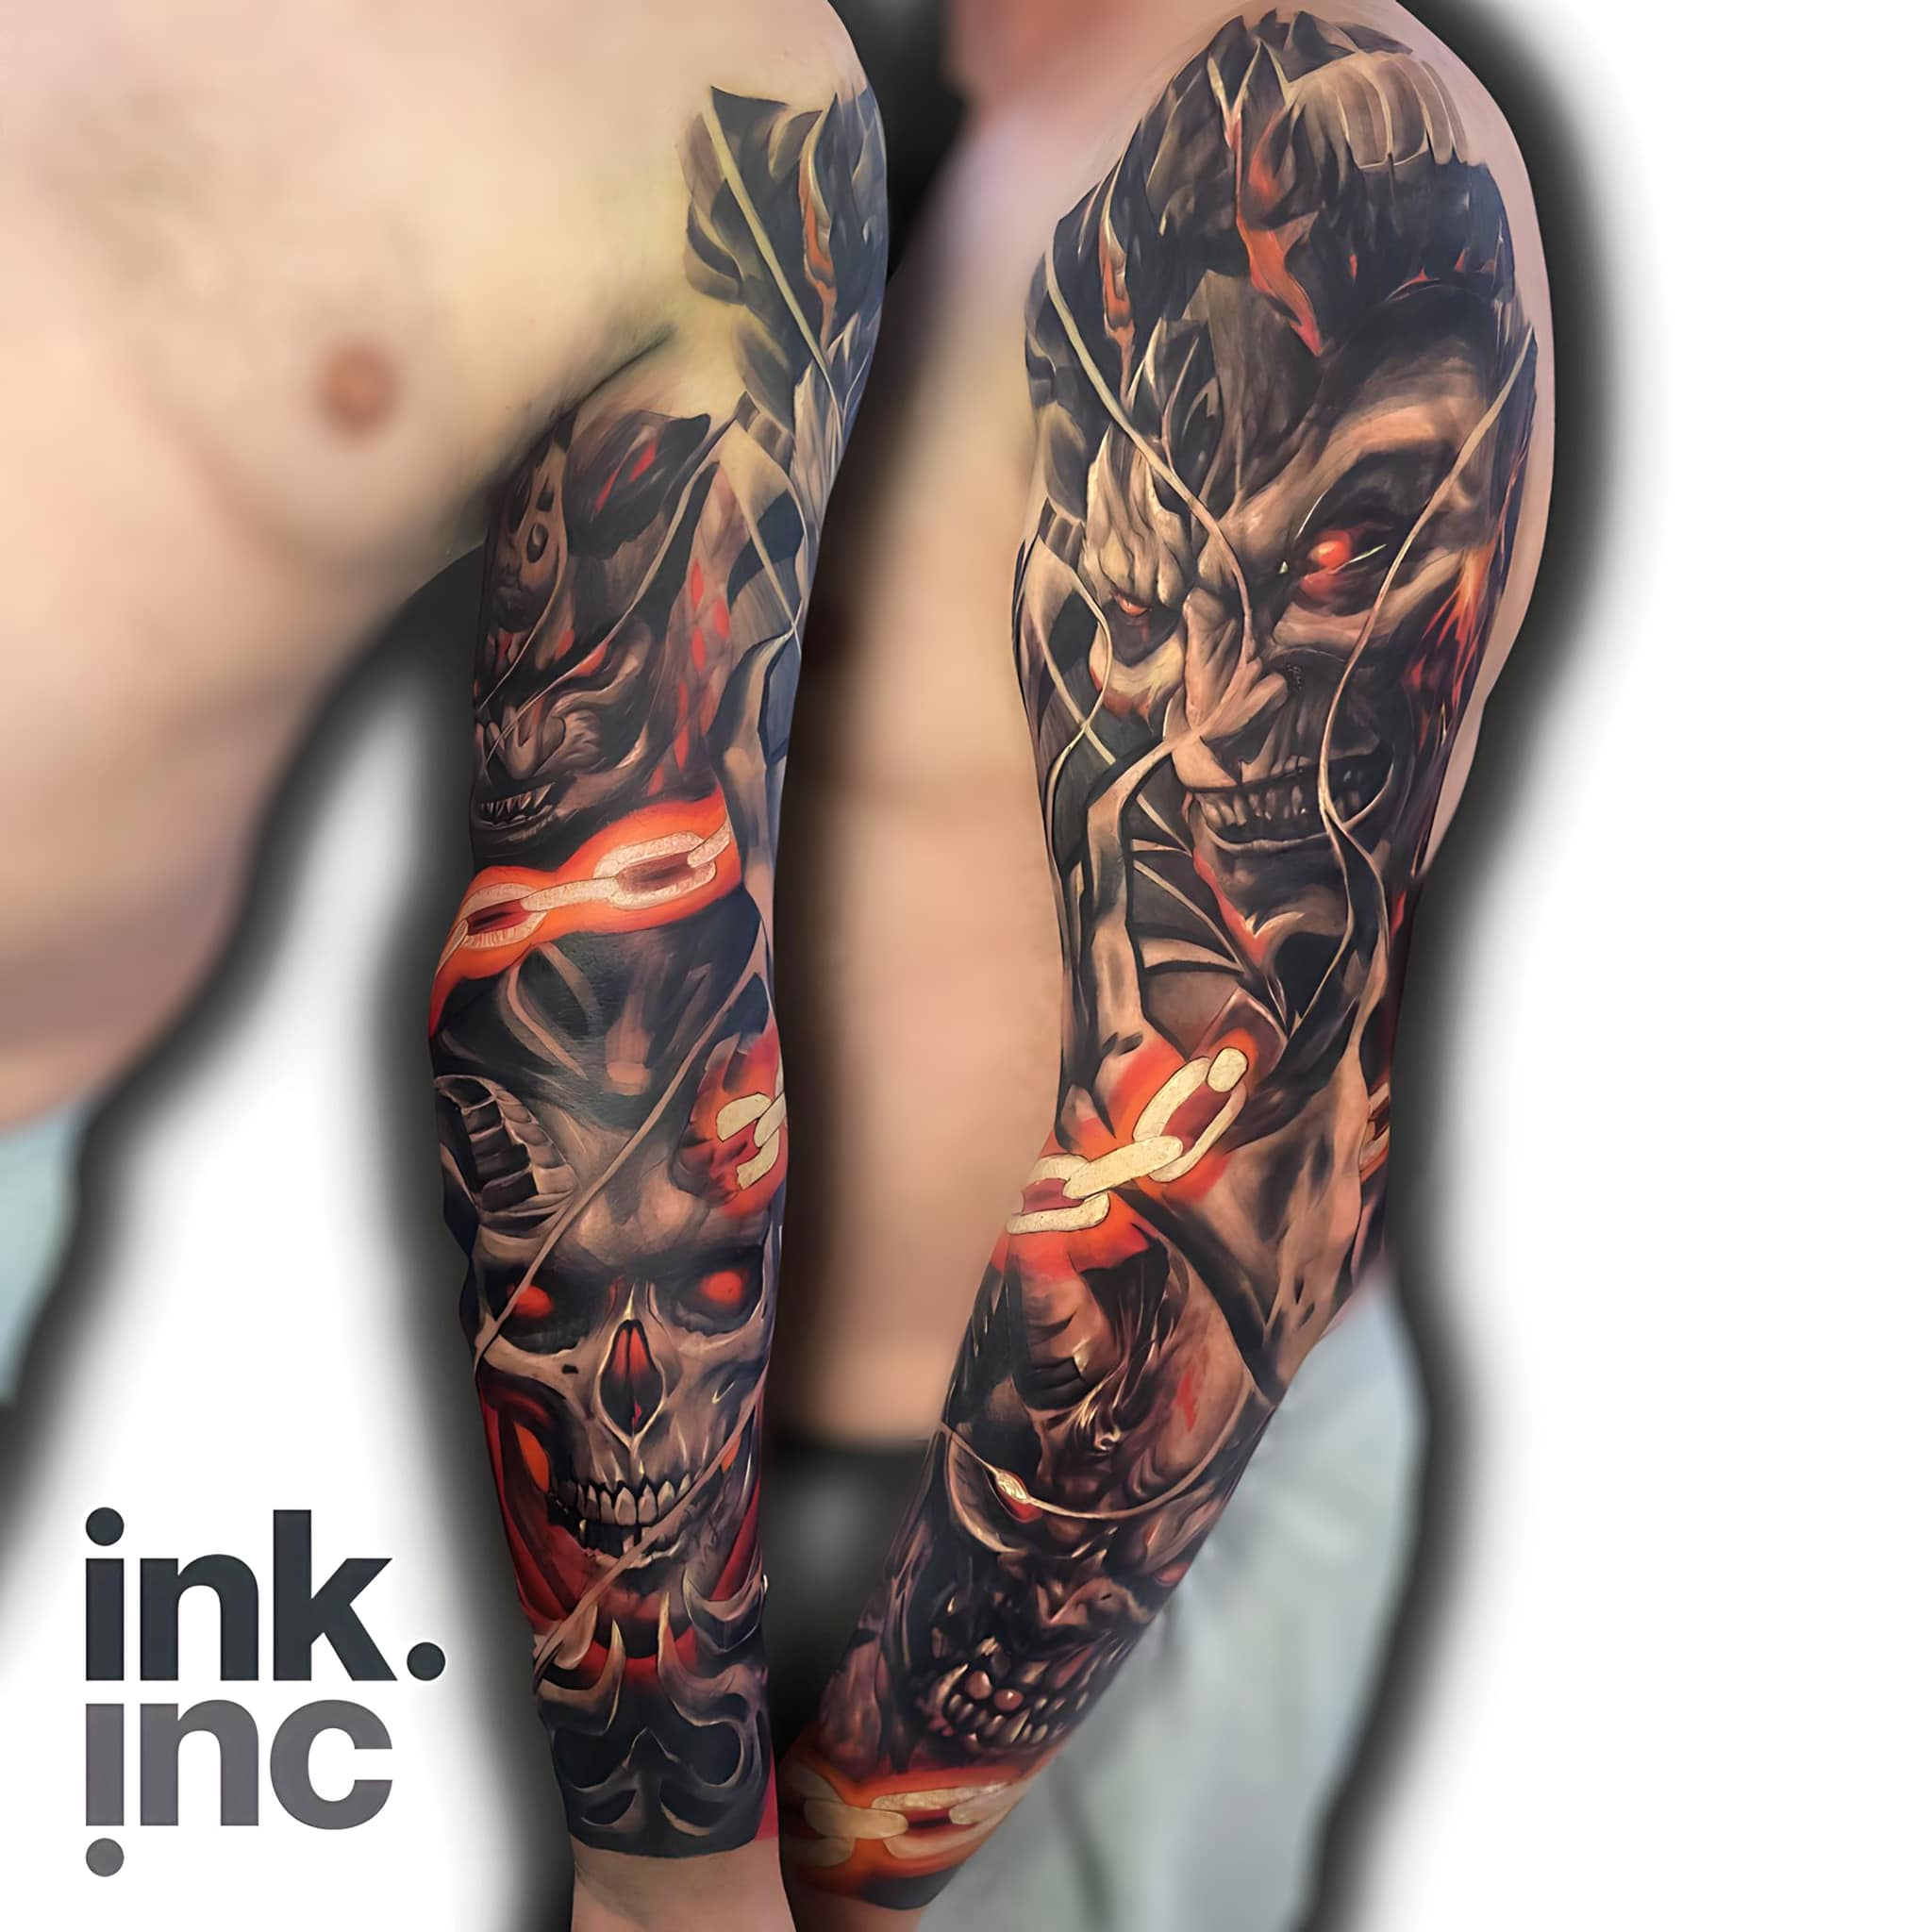 Skull Sleeve Tattoo Designs for Men Full Arm TemporaryTattoos Large Tiger  Lion | eBay